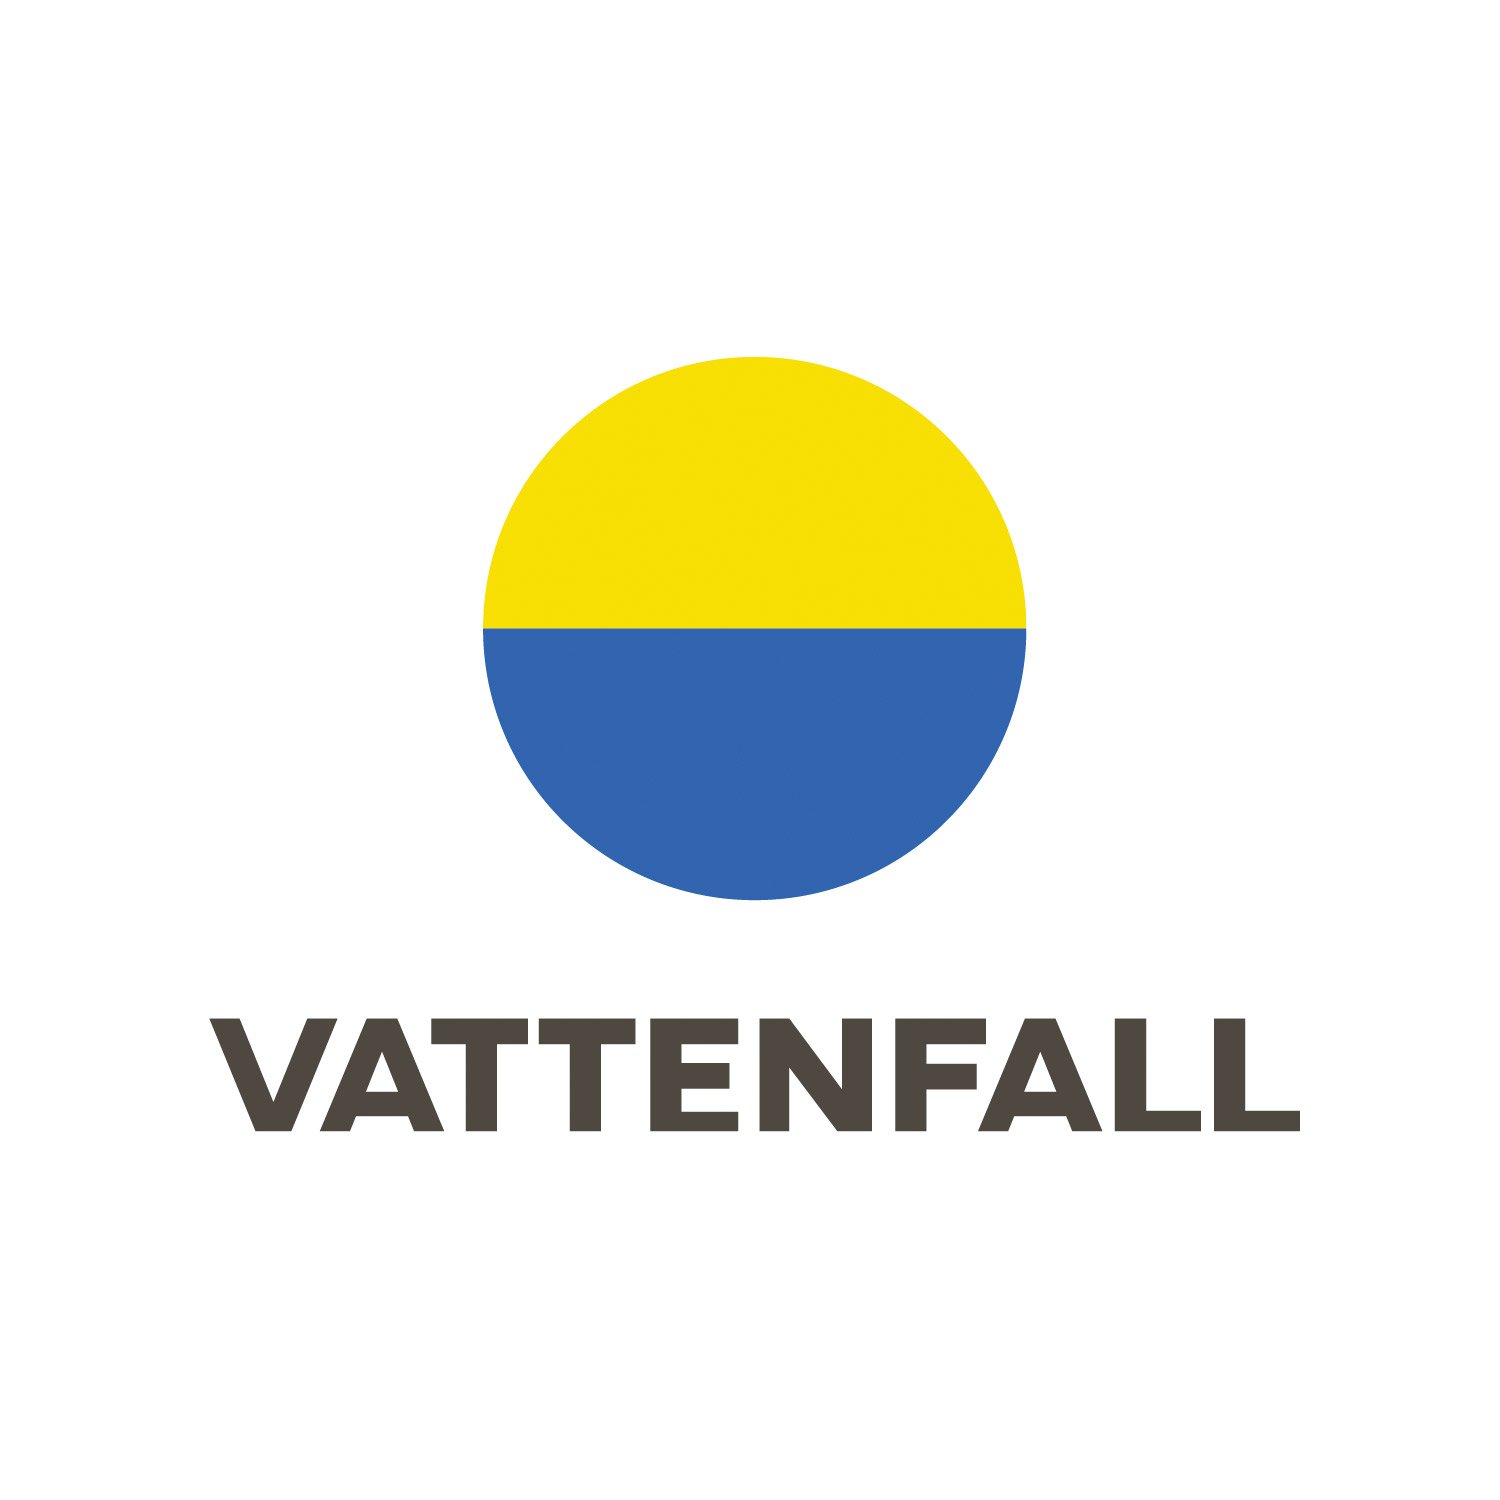 vattenfall-logo-1.jpg